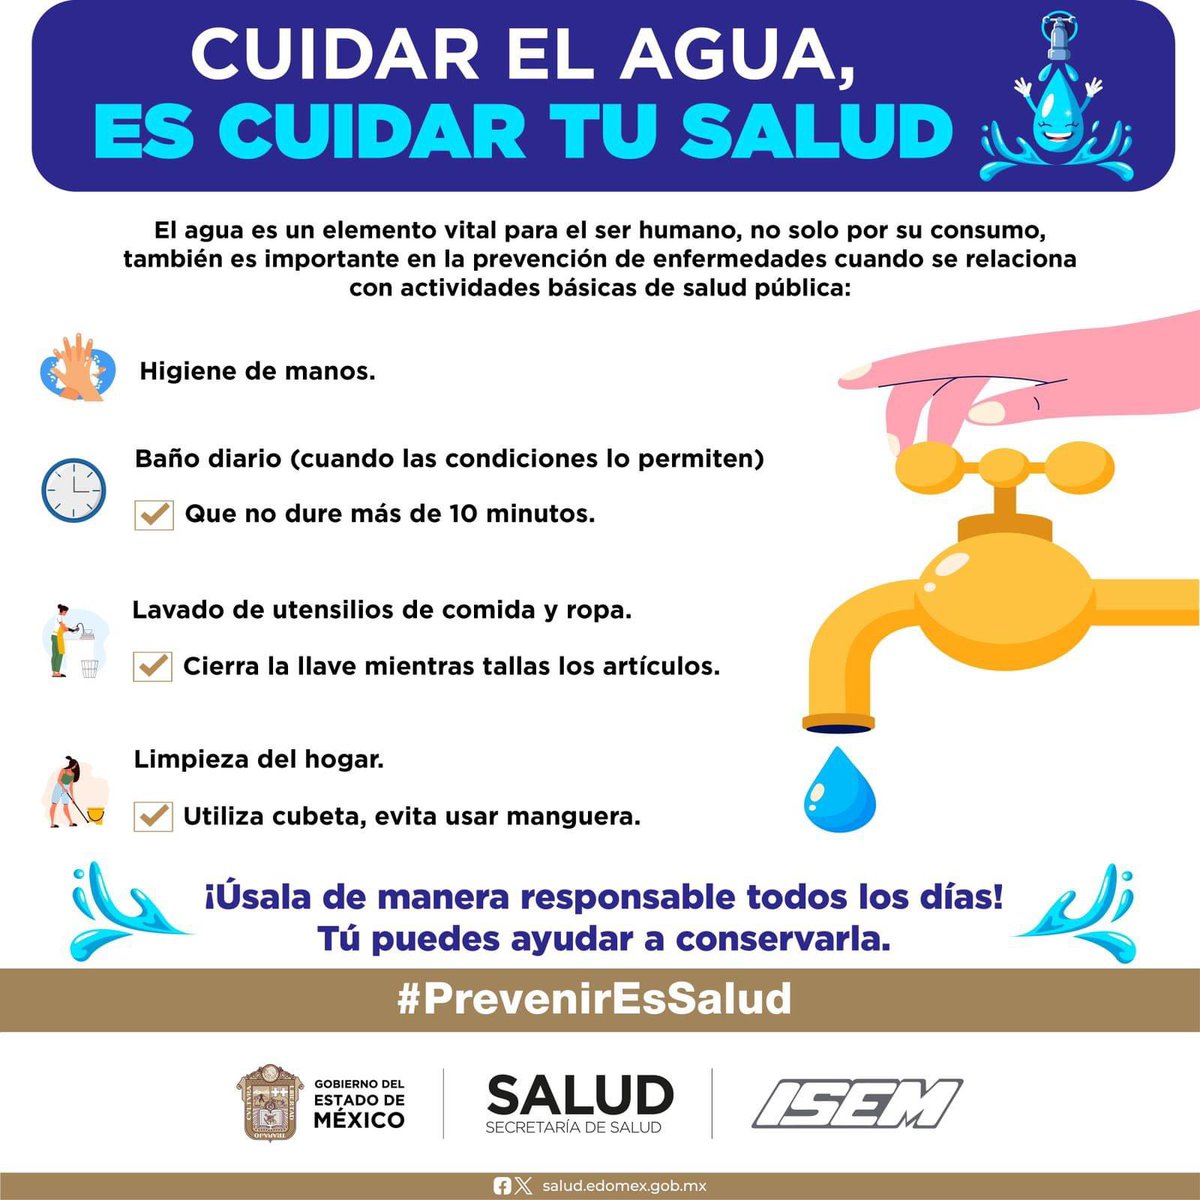 💦 El agua es un elemento vital para el ser humano, cuidar de ella es tarea de todos, sigue estas recomendaciones para conservarla y usarla de manera responsable. #PrevenirEsSalud